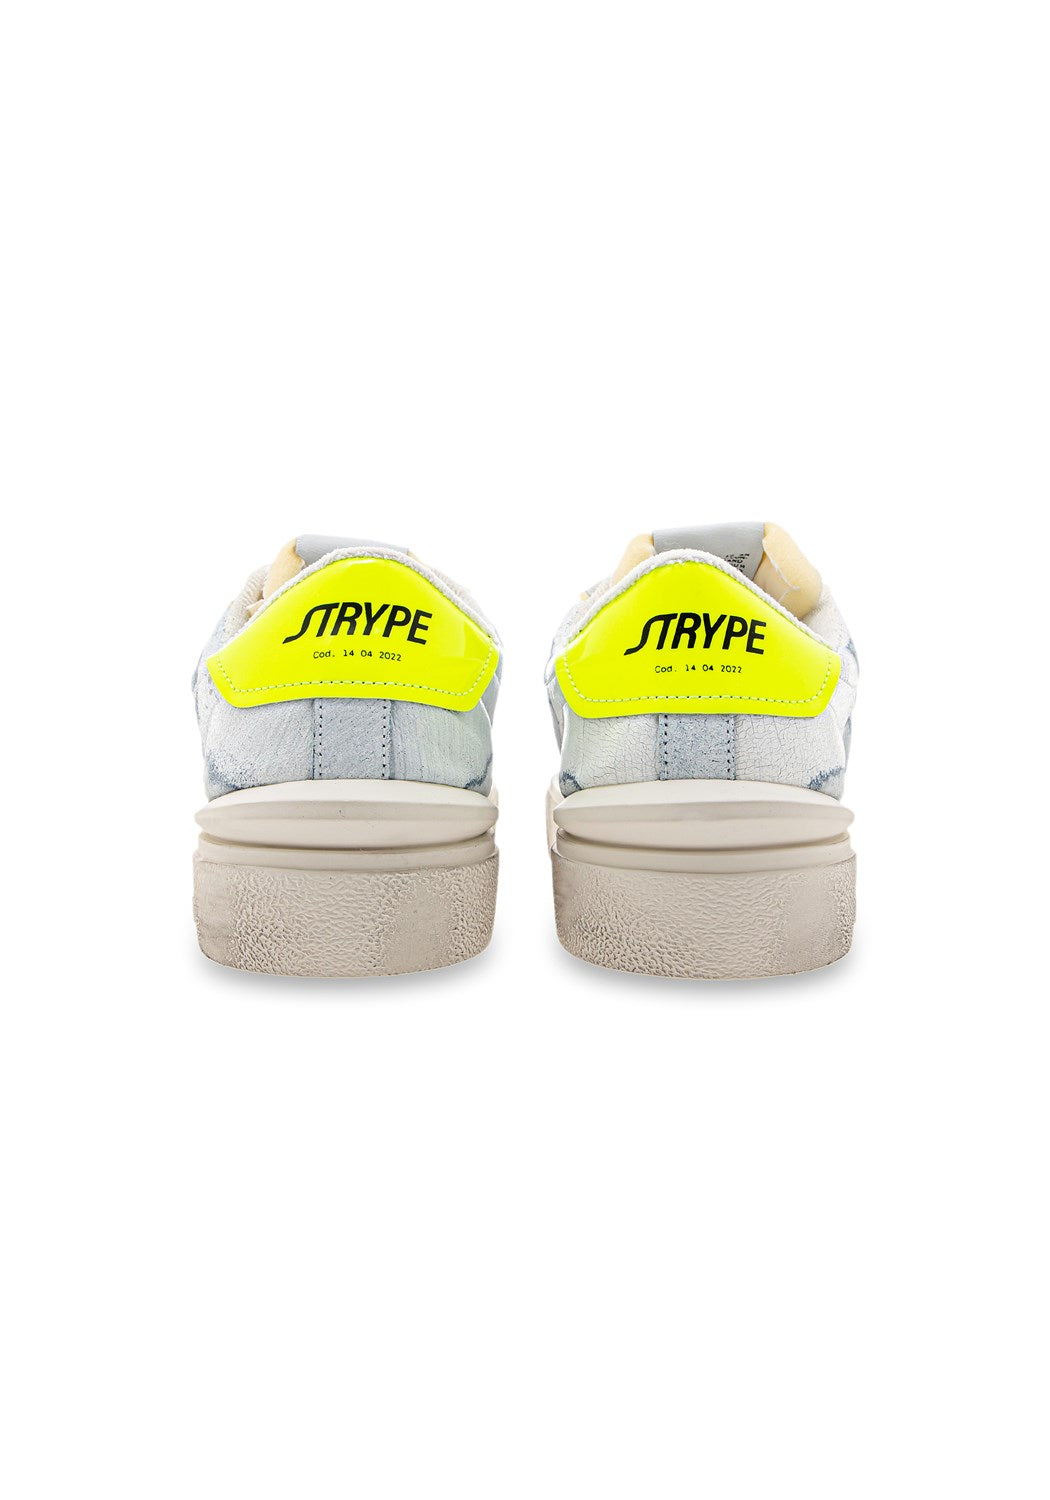 ST011-GF Sneaker Destroyed white/yellow | Bildmaterial bereitgestellt von SHOES.PLEASE.